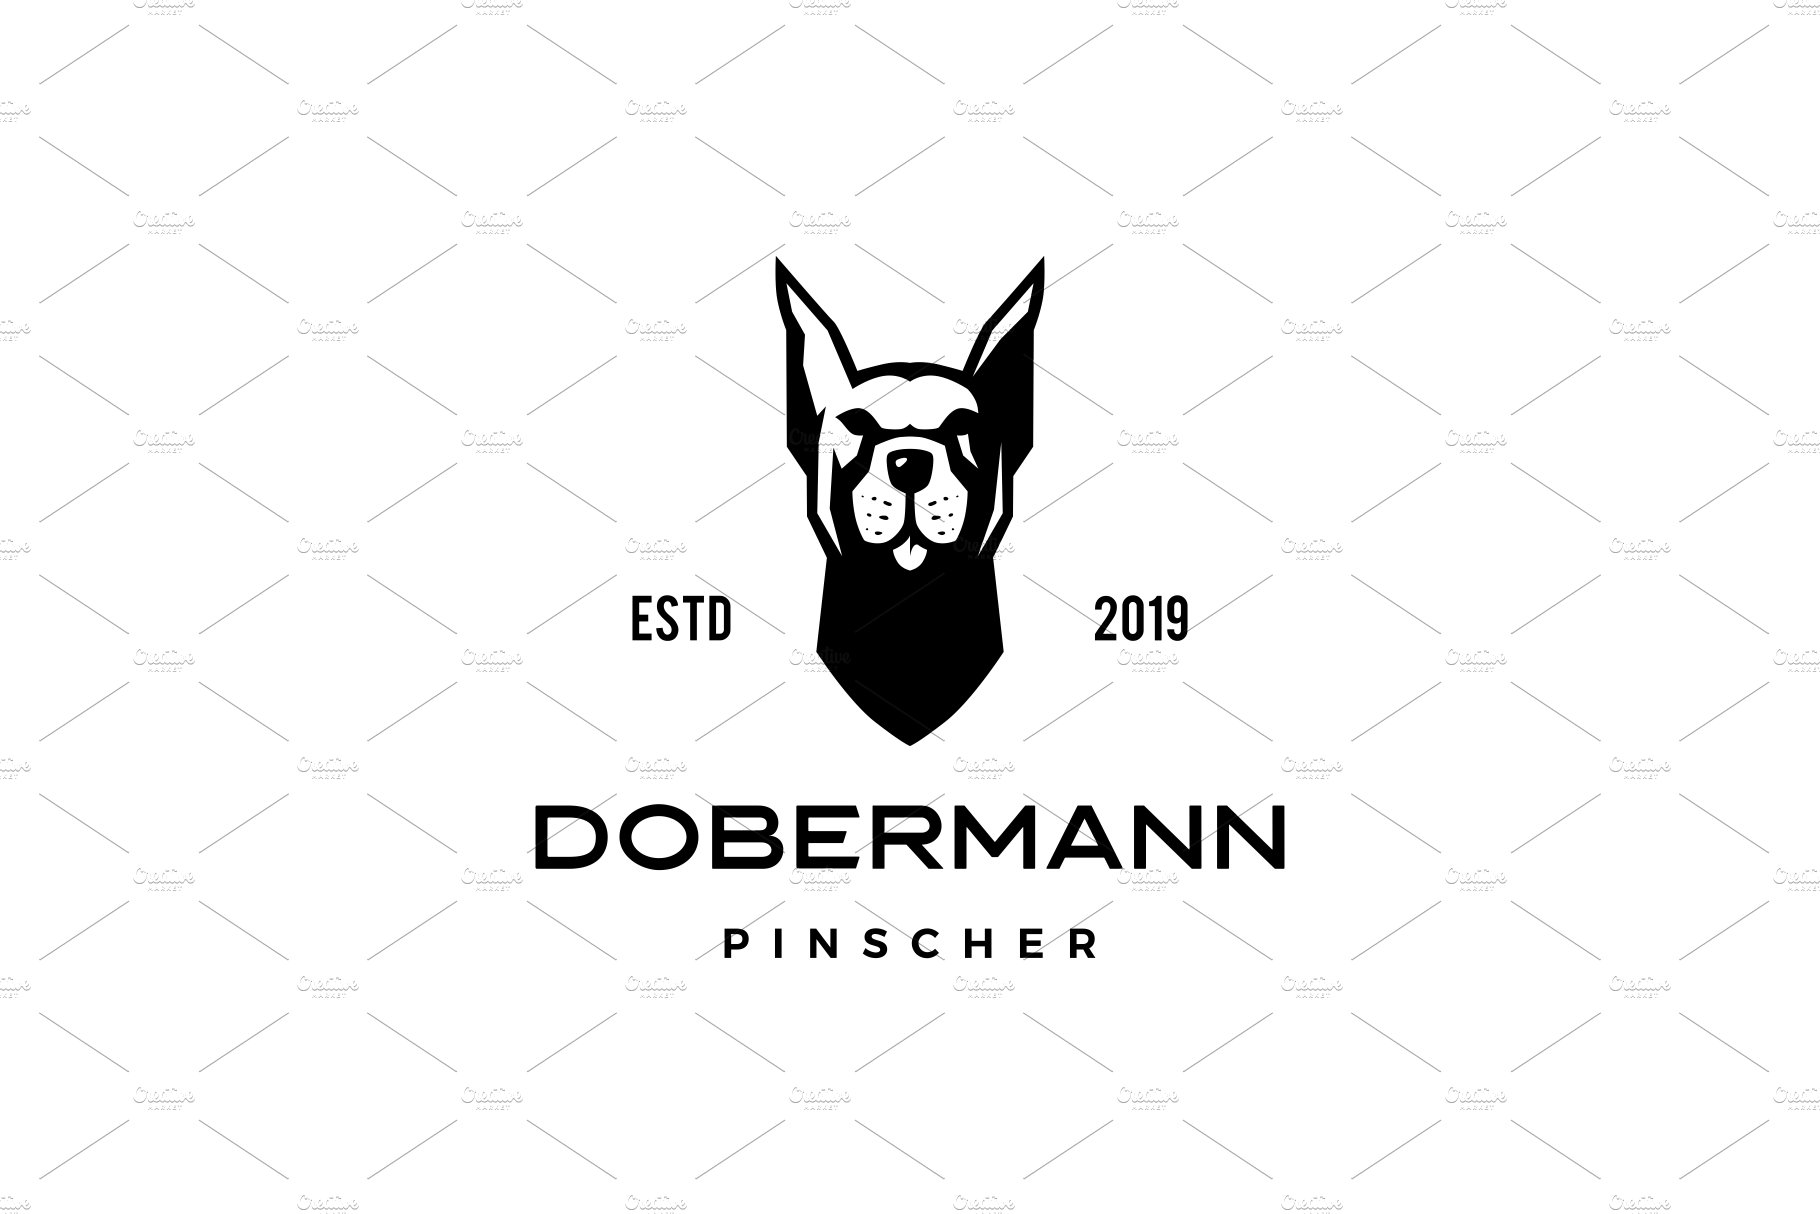 dobermann pinscher dog logo vector cover image.